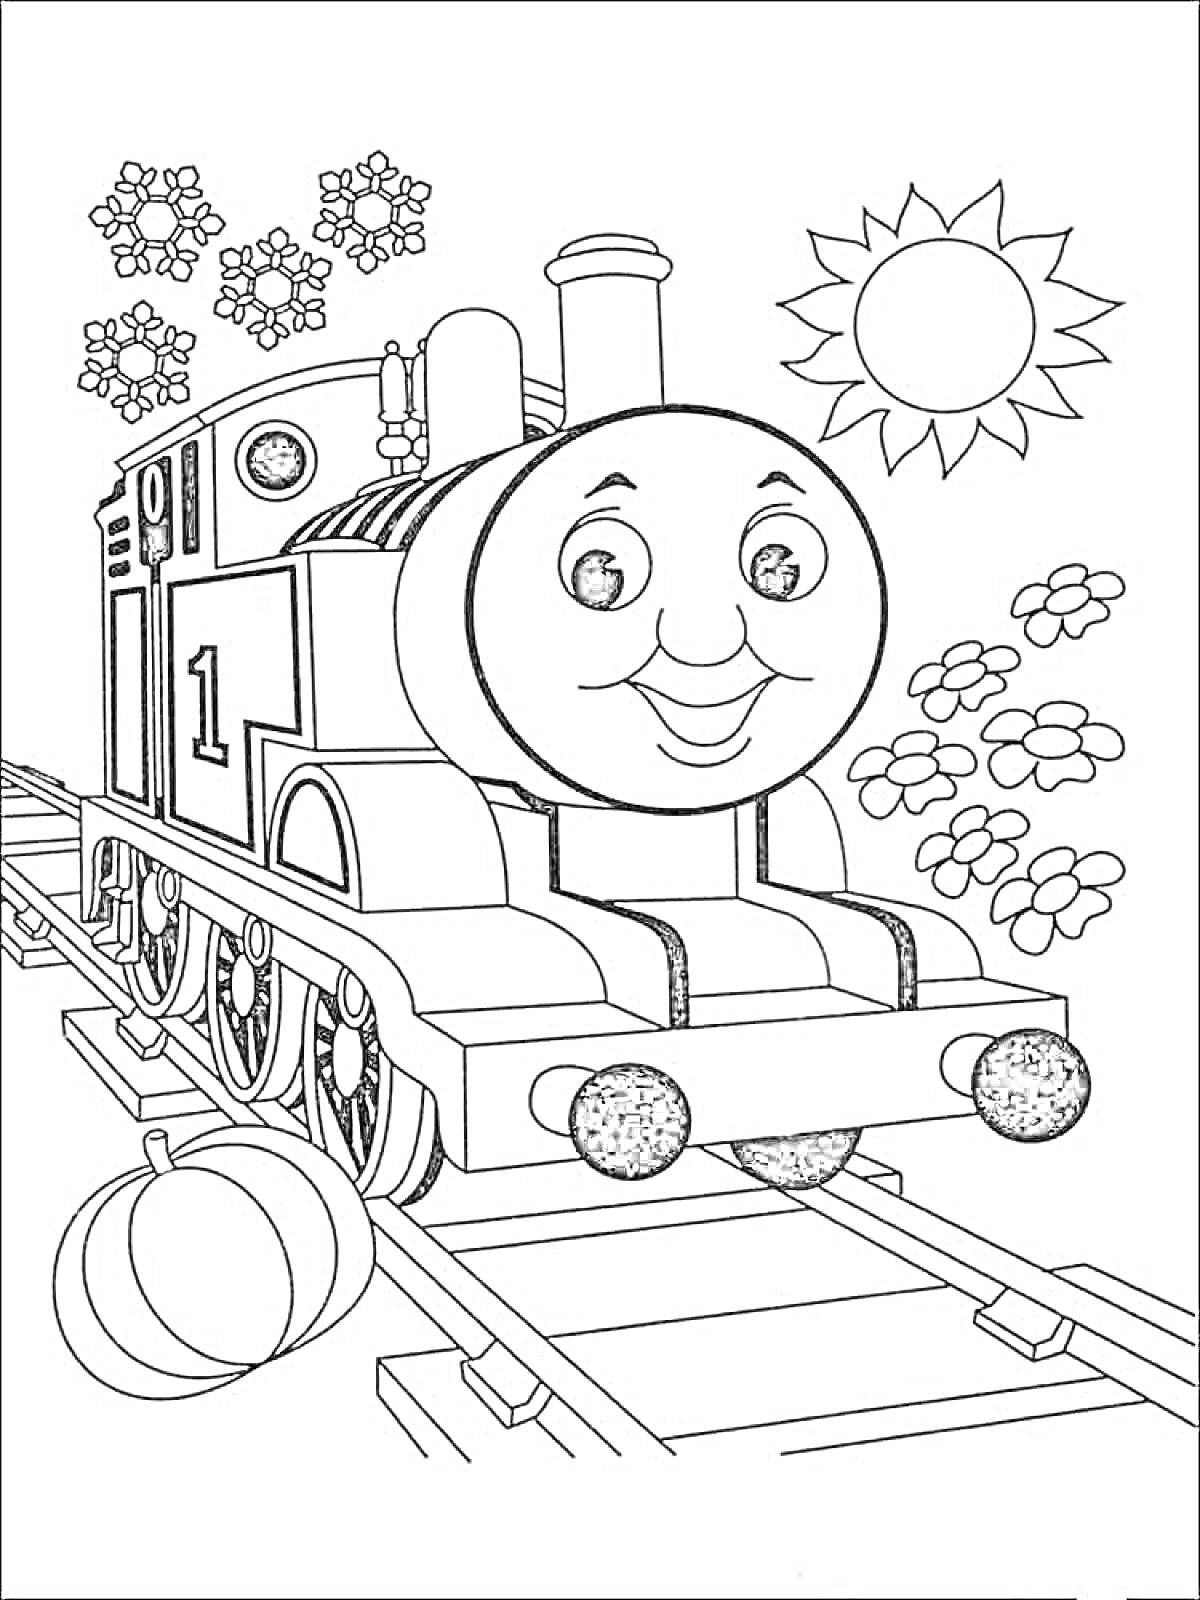 Раскраска Паровозик Томас на железнодорожных путях с кошелем, цветами и солнцем